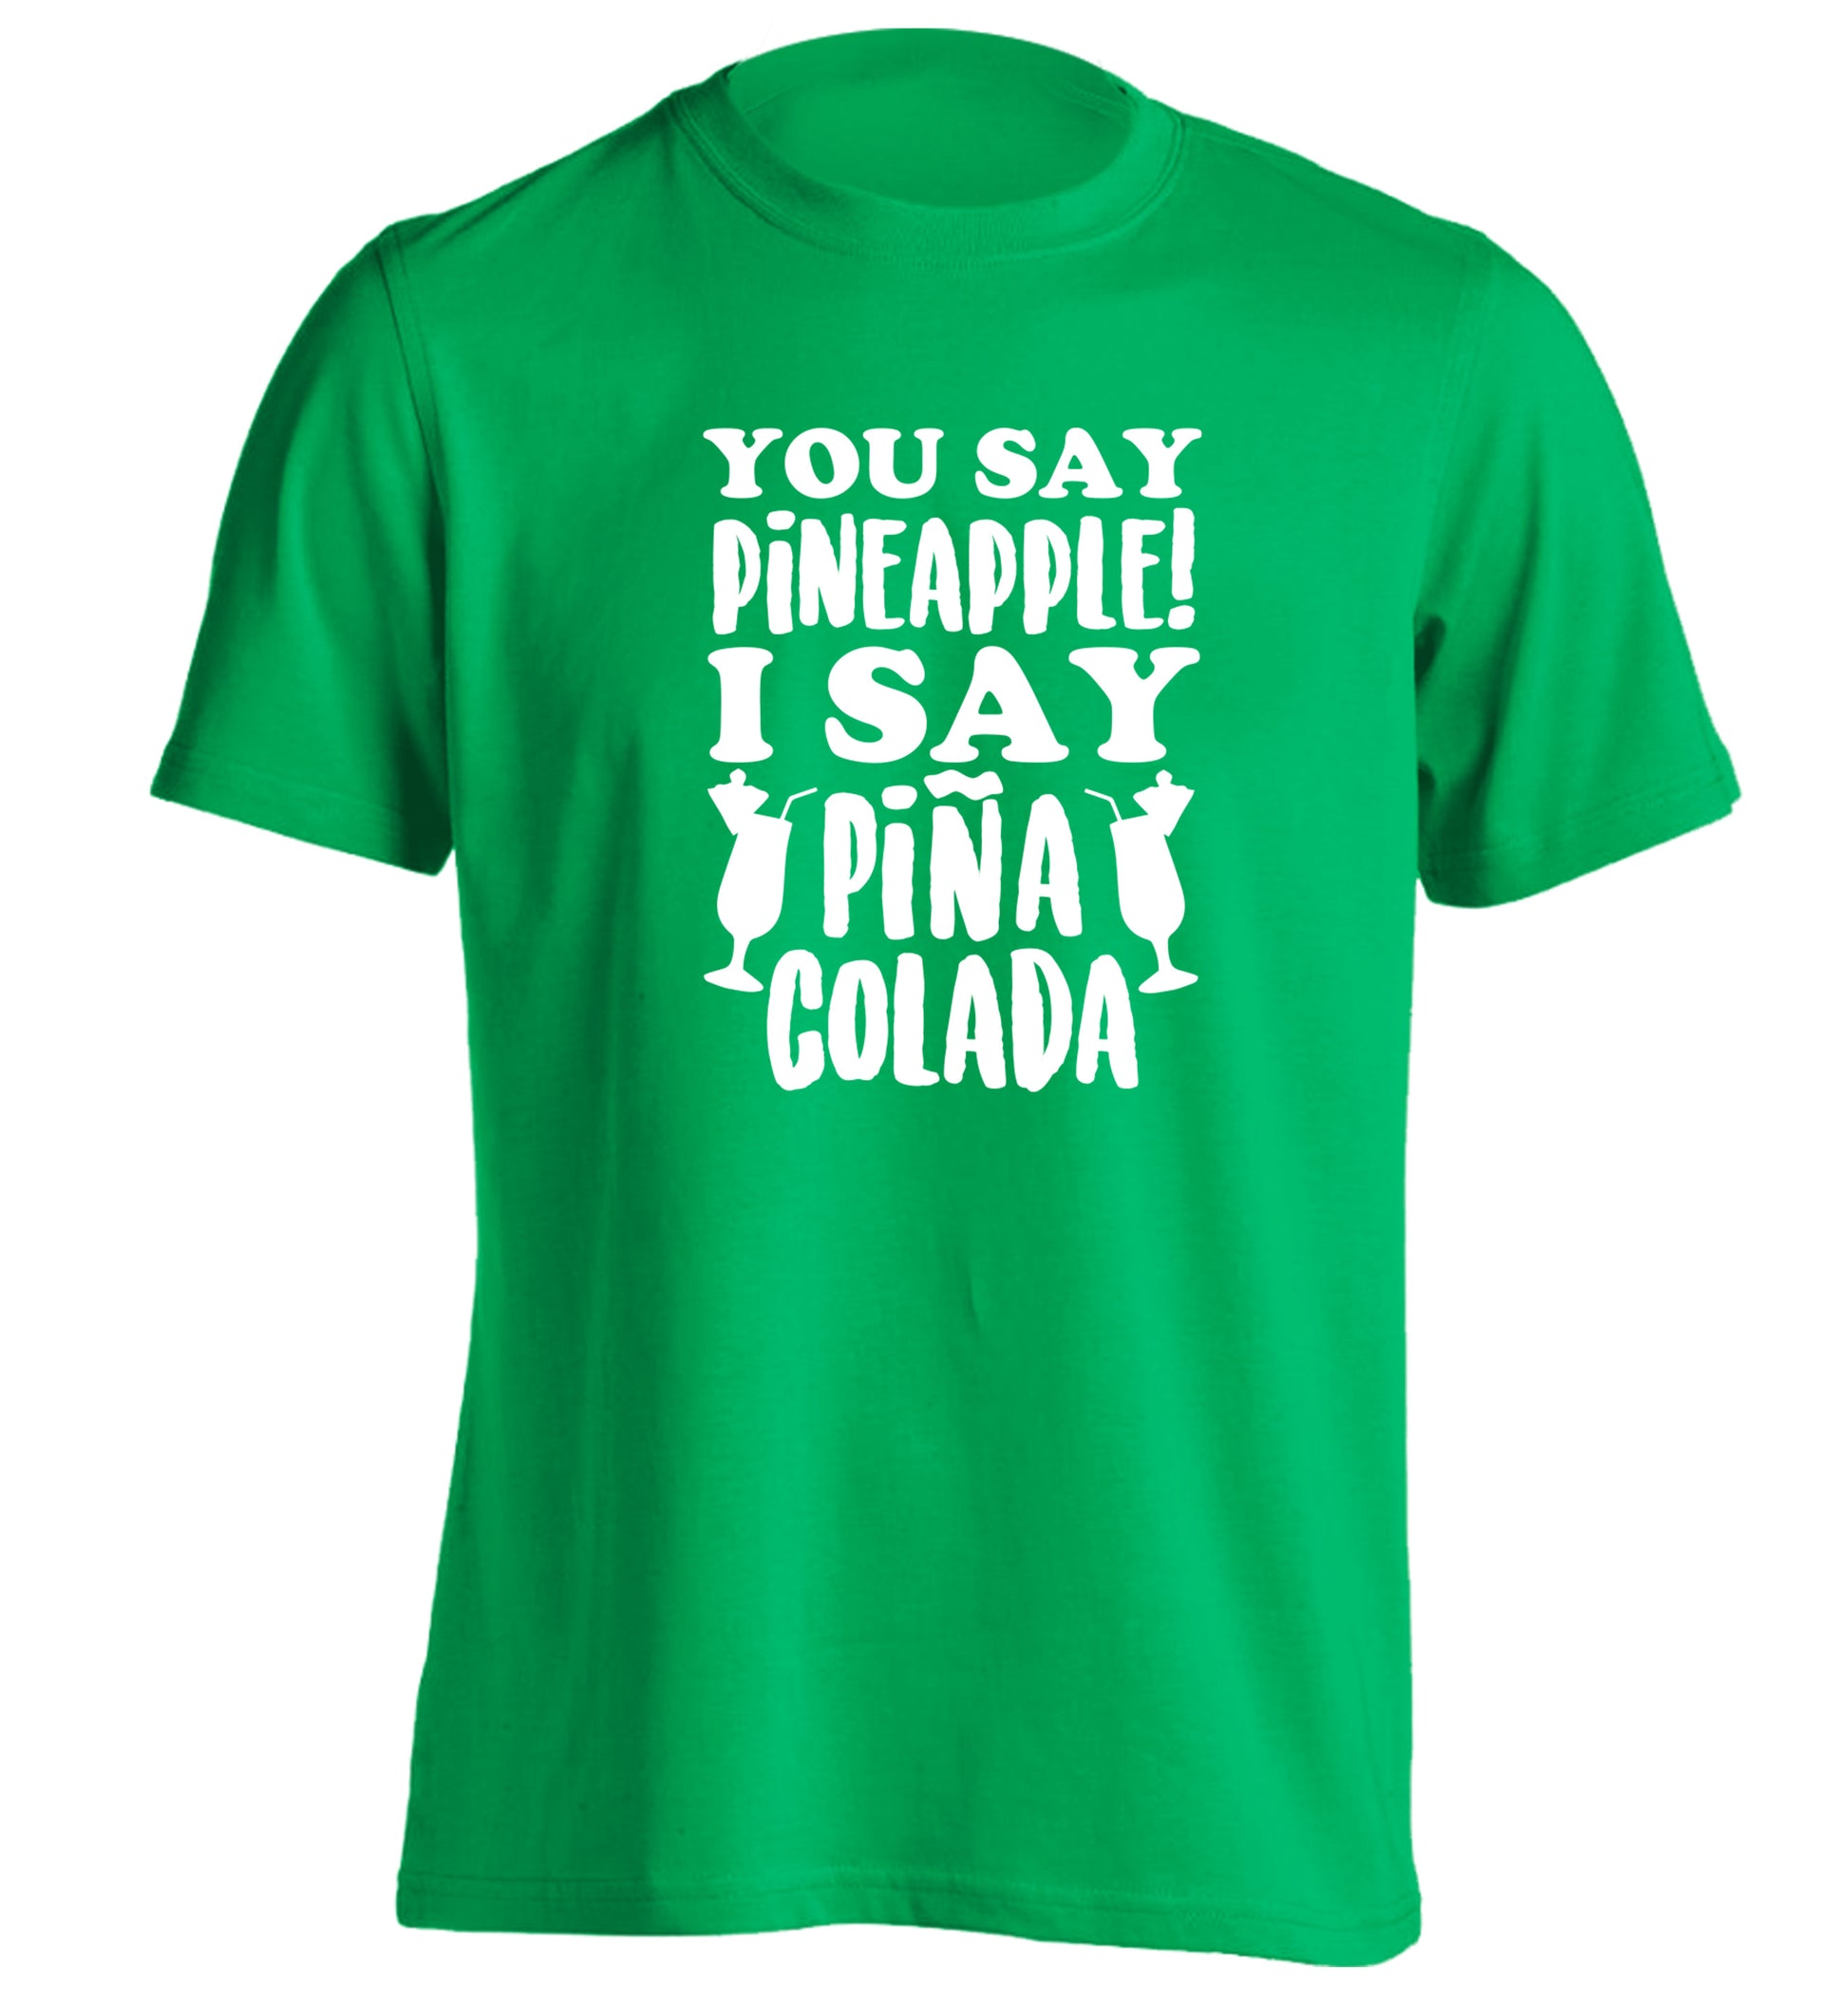 You say pinapple I say Pina colada adults unisex green Tshirt 2XL